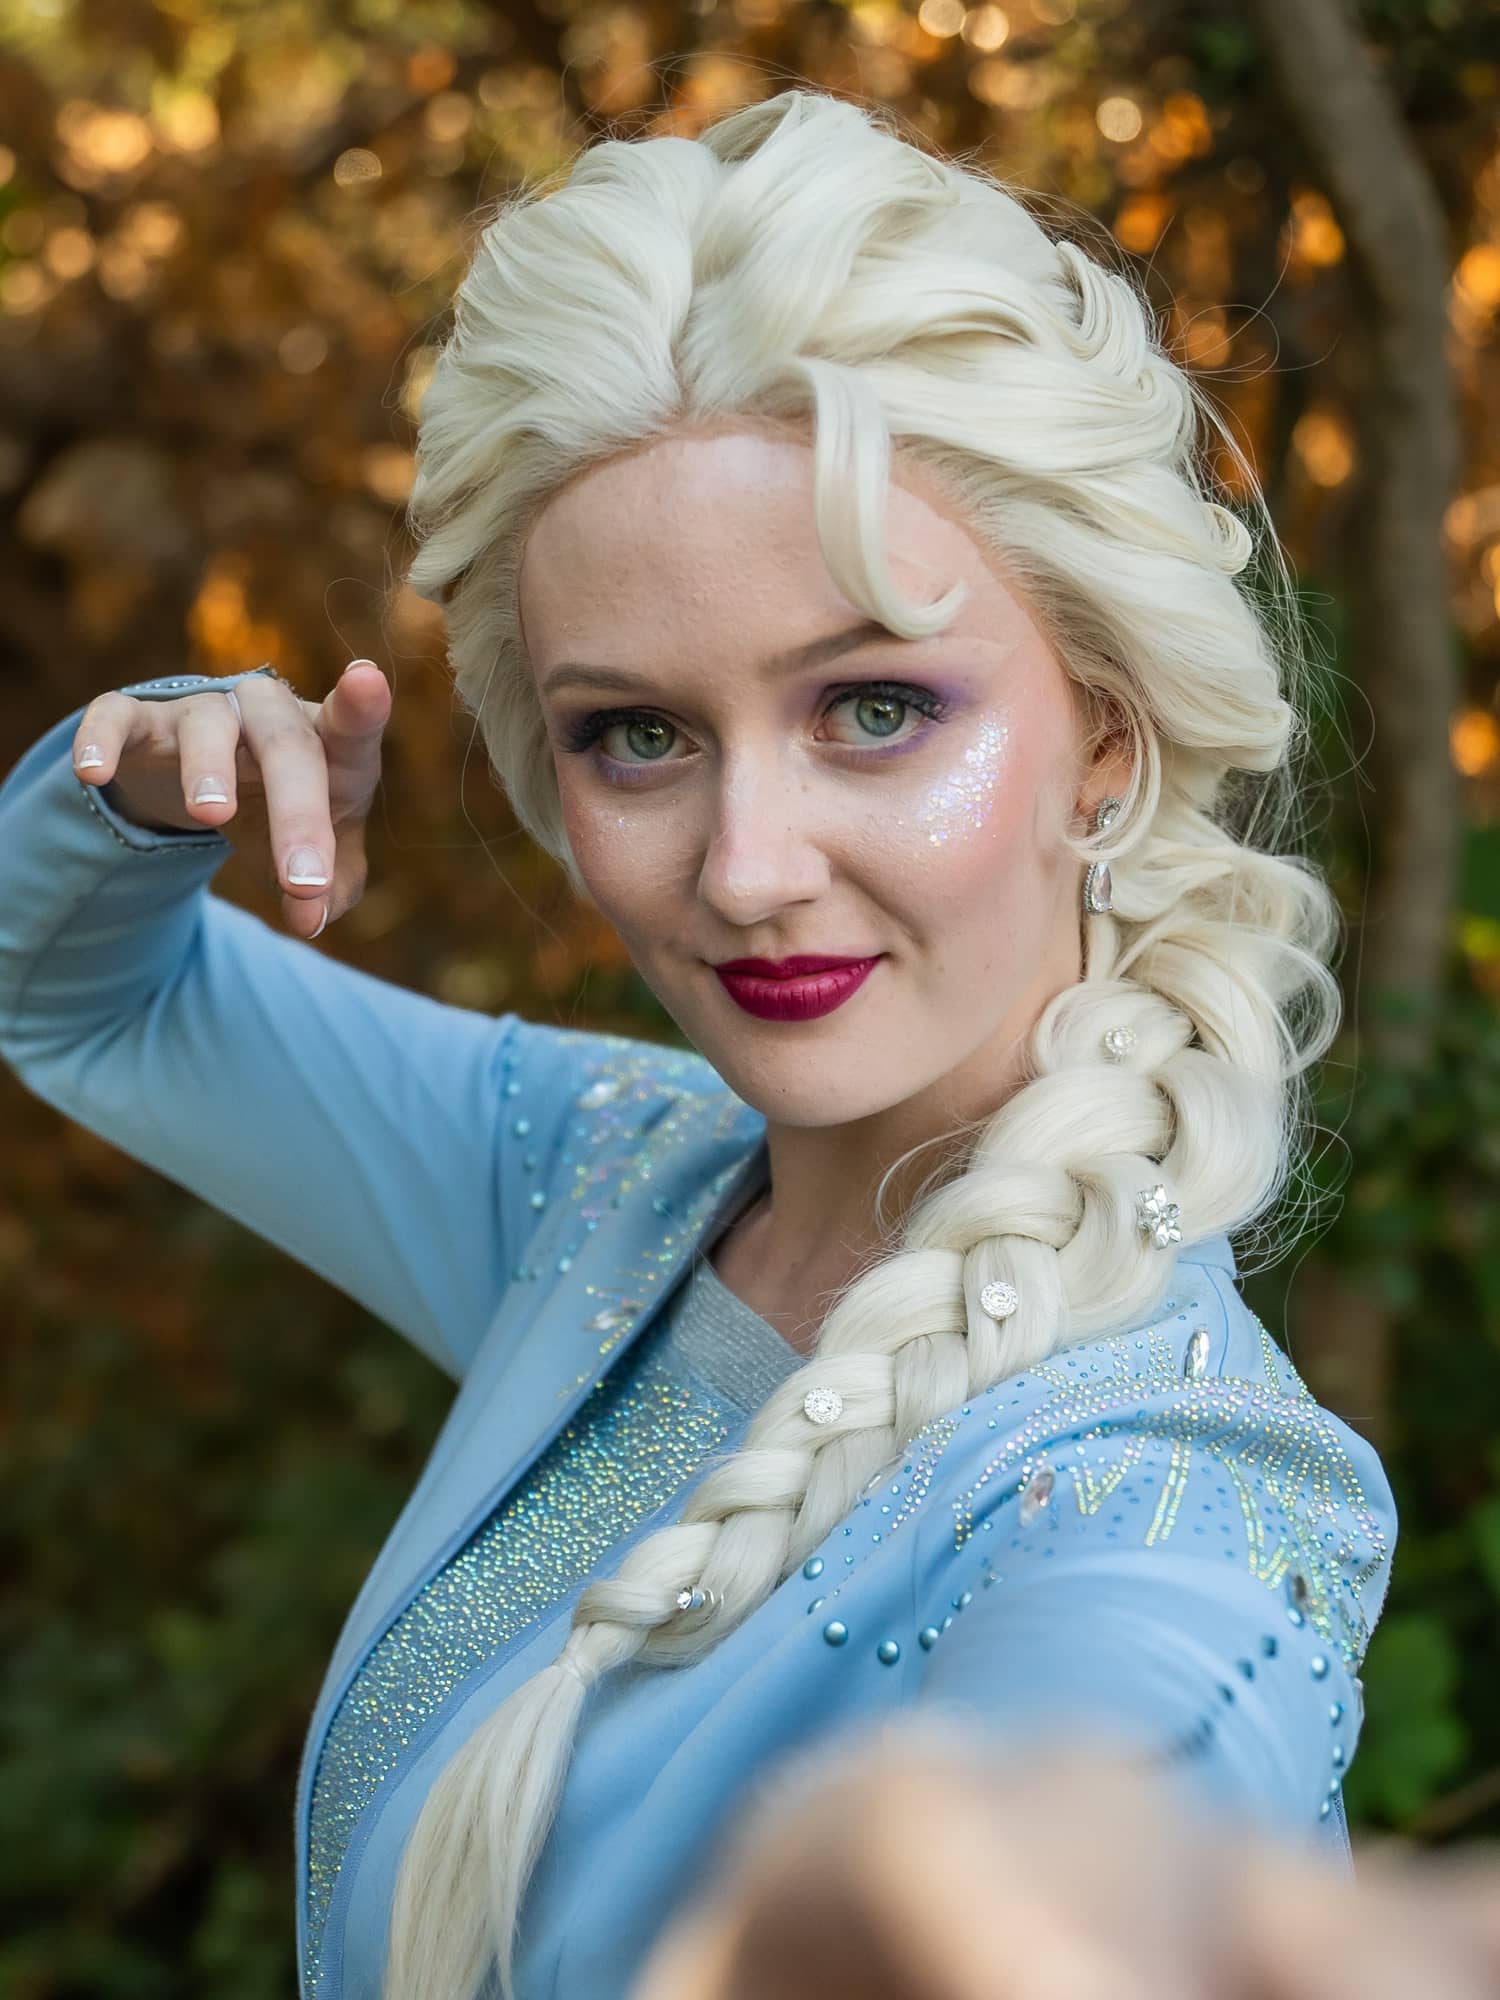 Ice Queen - Frozen - The Little Mermaid - Character Parties in Northern CA